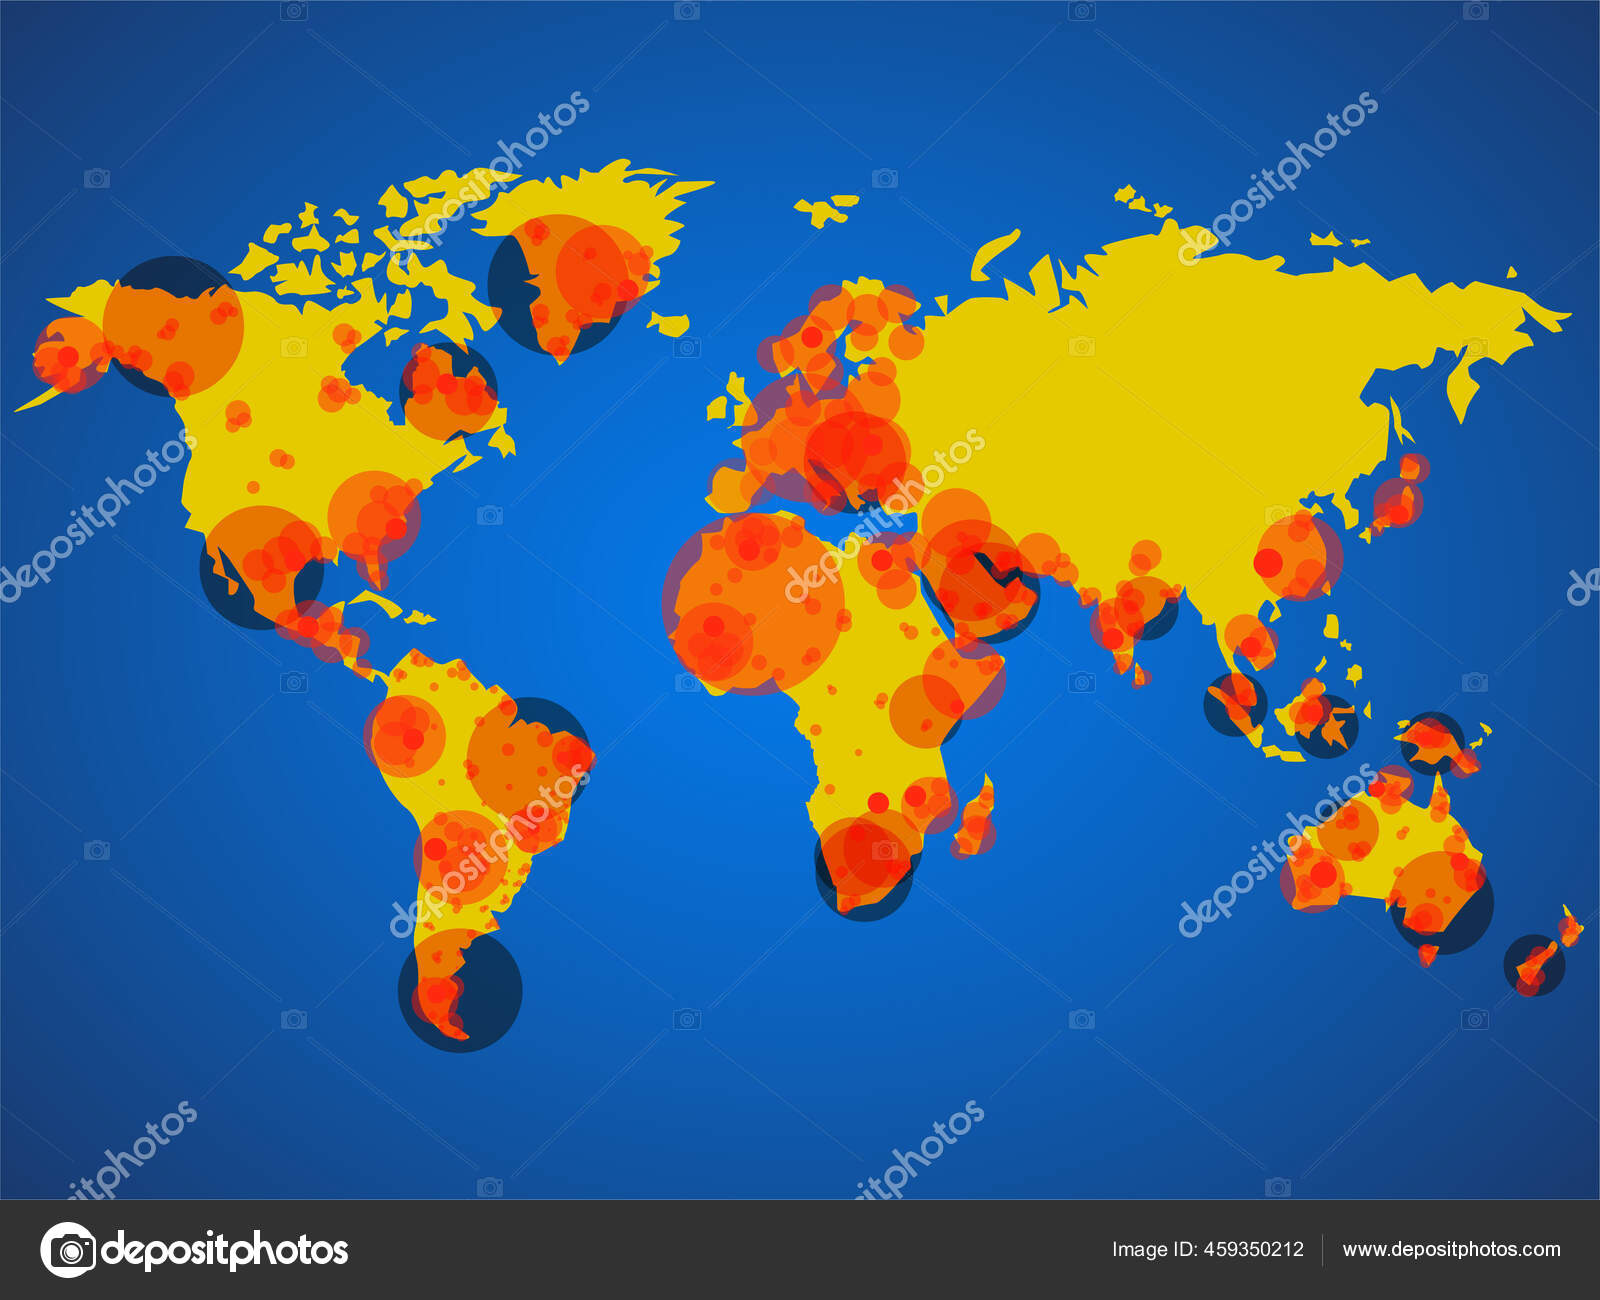 Coronavirus大流行病世界地图 Covid 19 Covid地图疾病每年都会爆发 矢量背景 图库矢量图像 C Vladystock